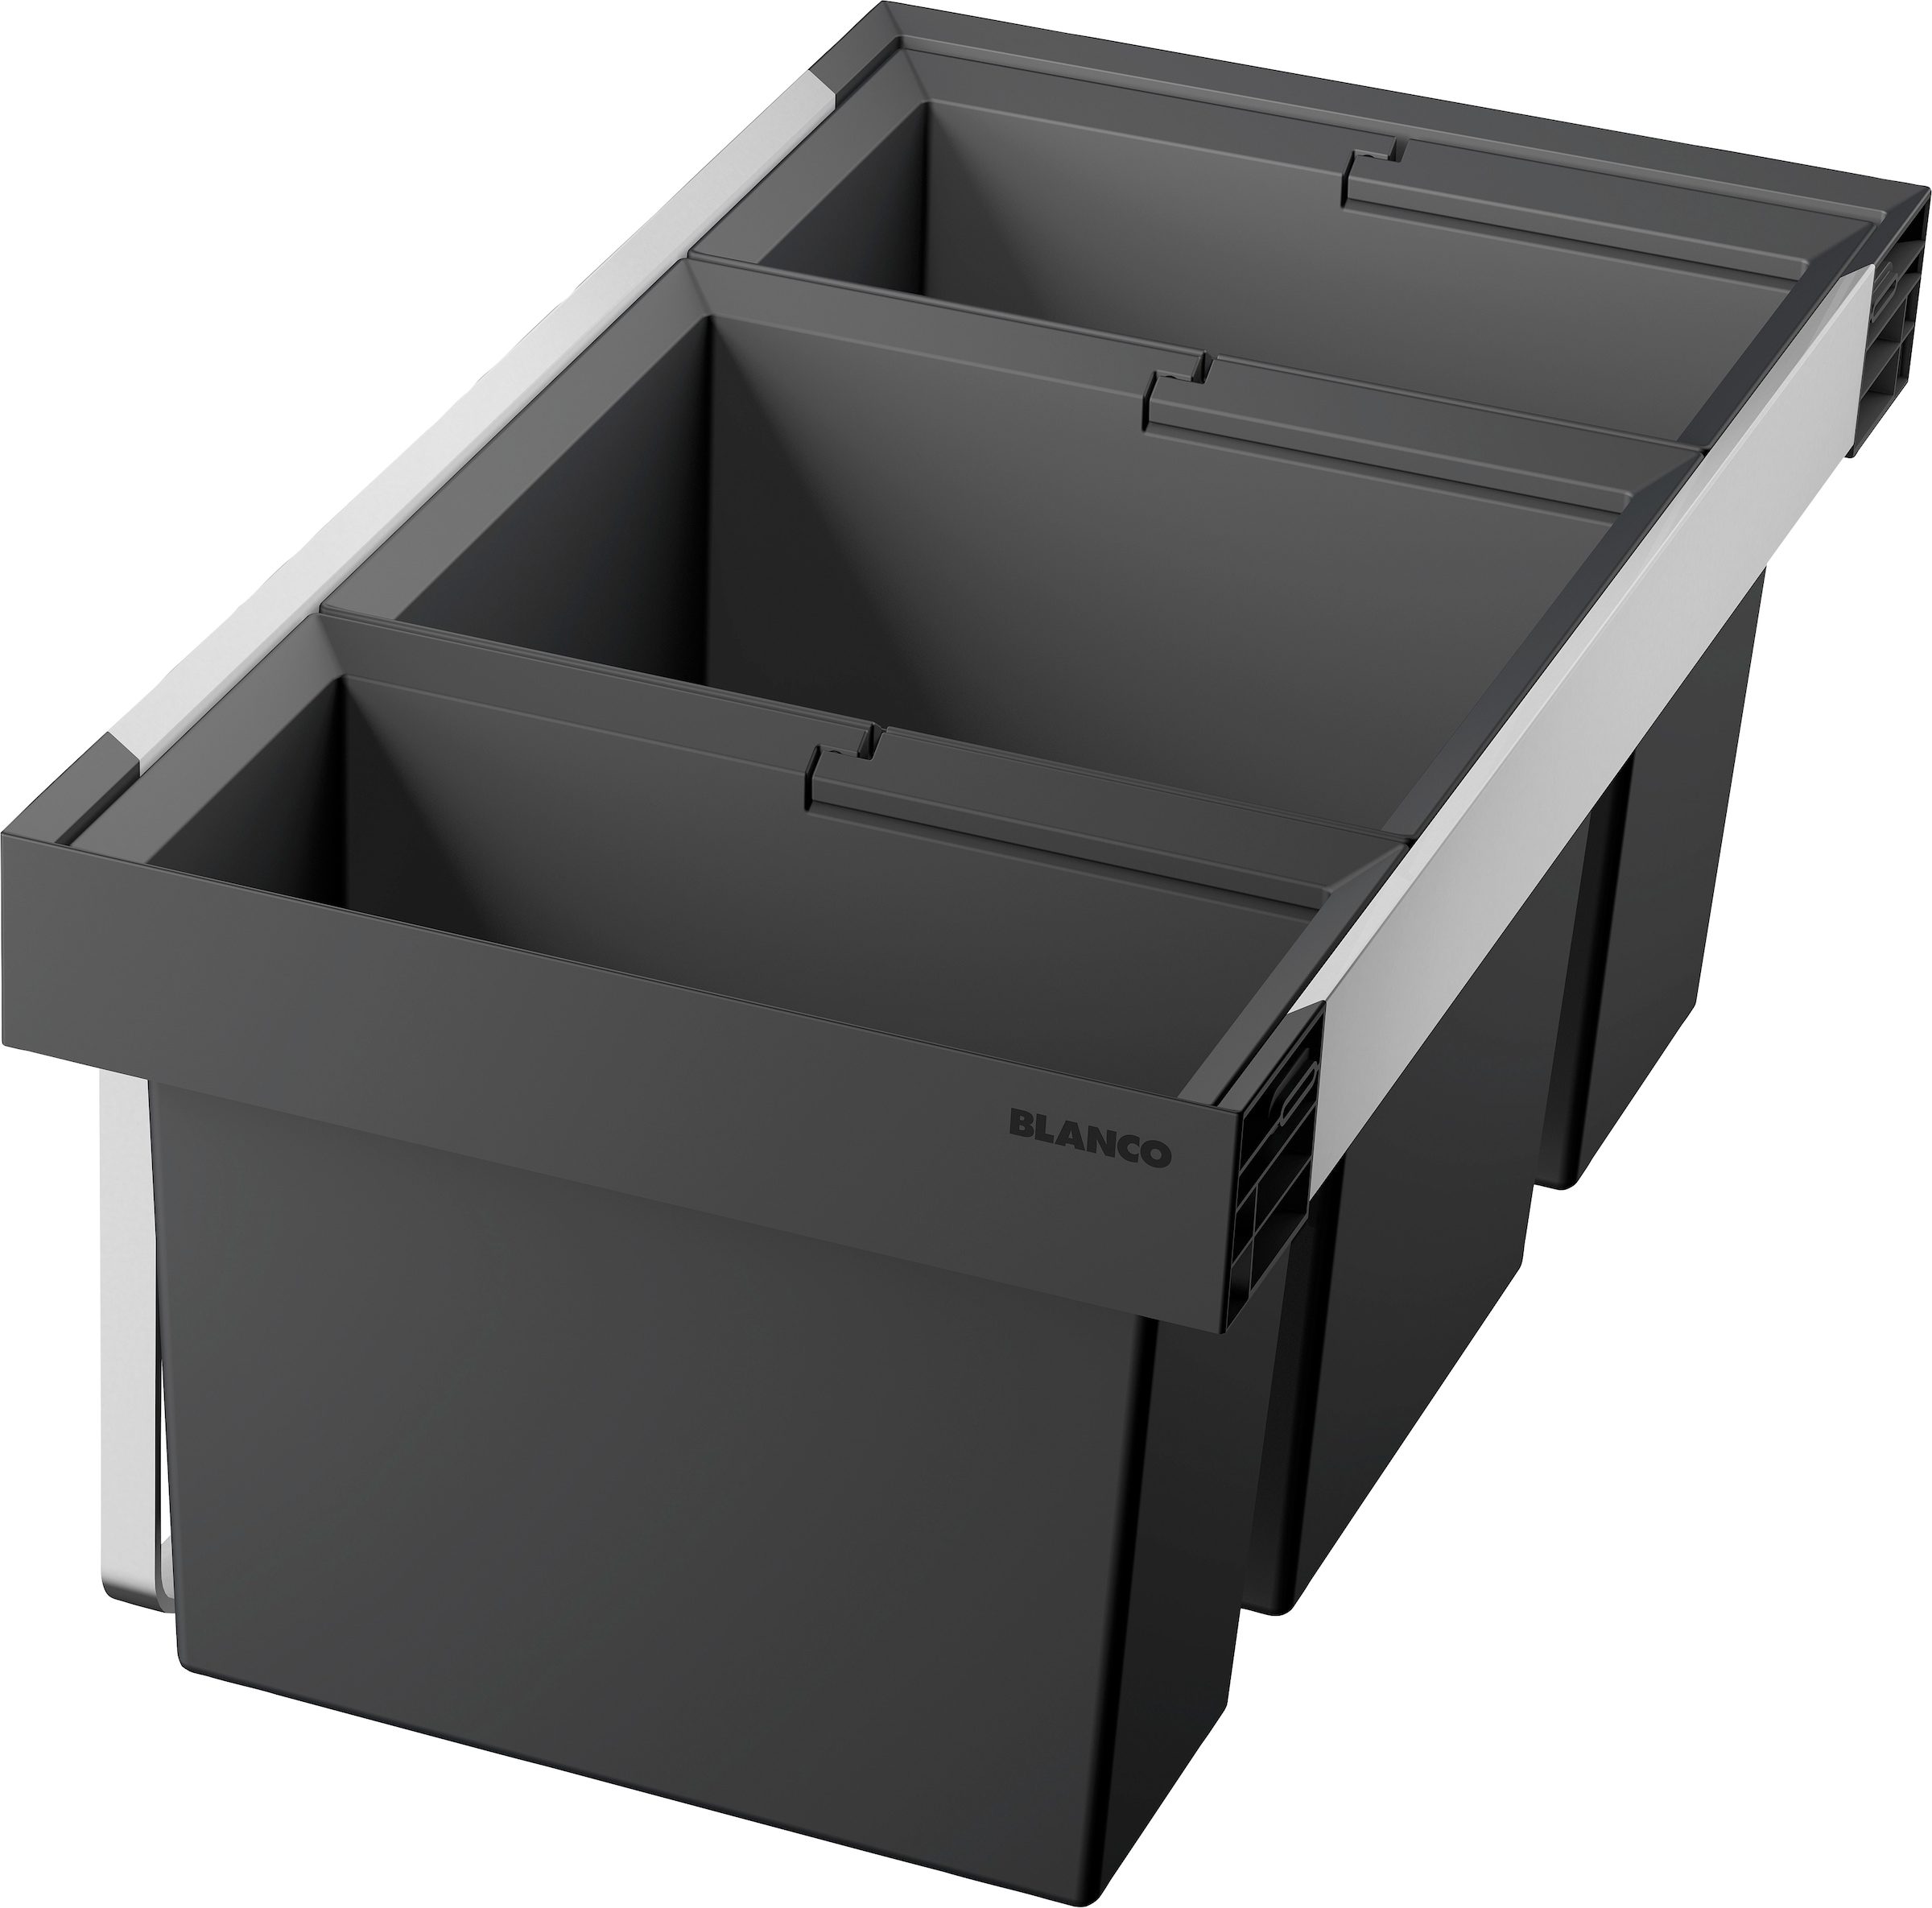 Blanco Mülltrennsystem »Flexon II 80/3«, 3 Behälter, Kunststoff, Stahlblech, 800 mm Untermass